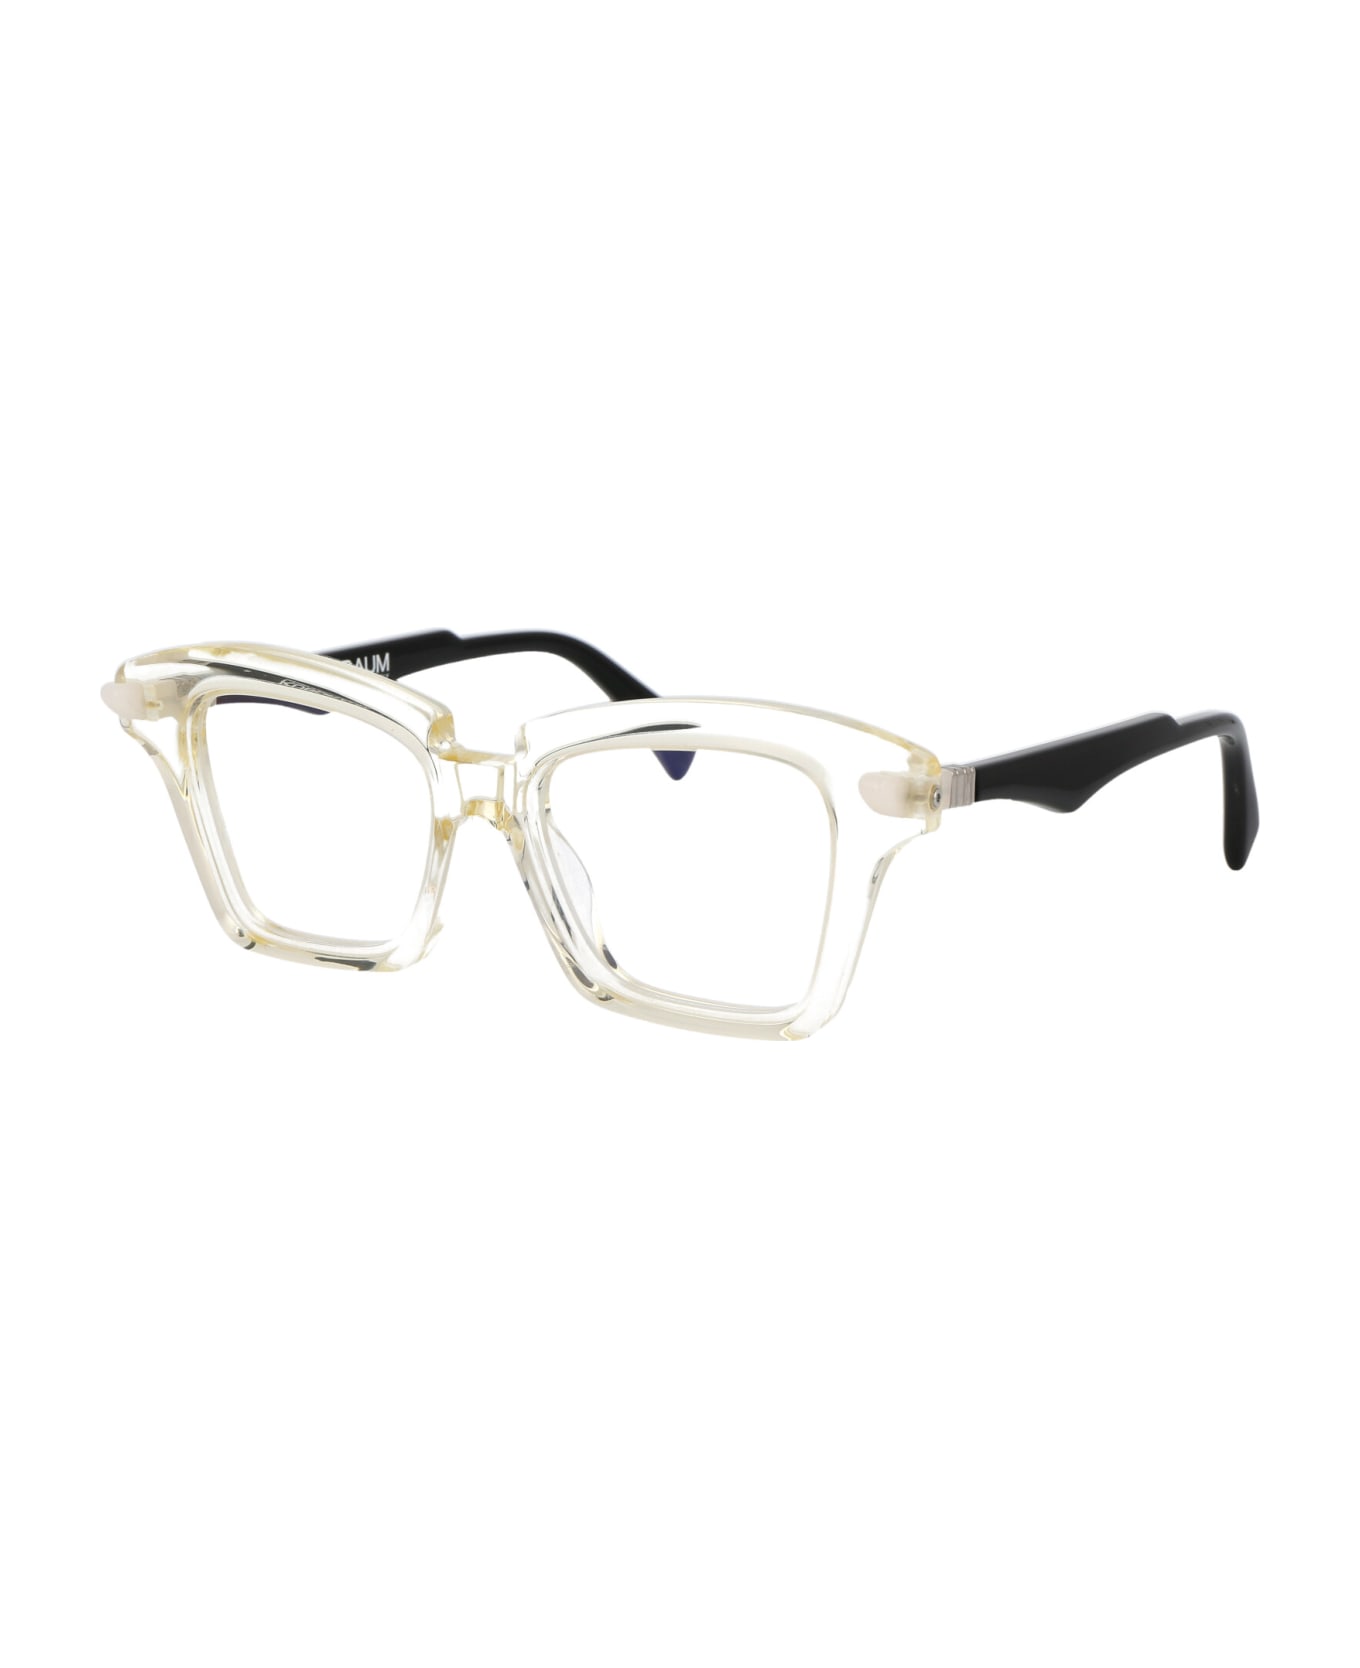 Kuboraum Maske Q1 Glasses - CHP